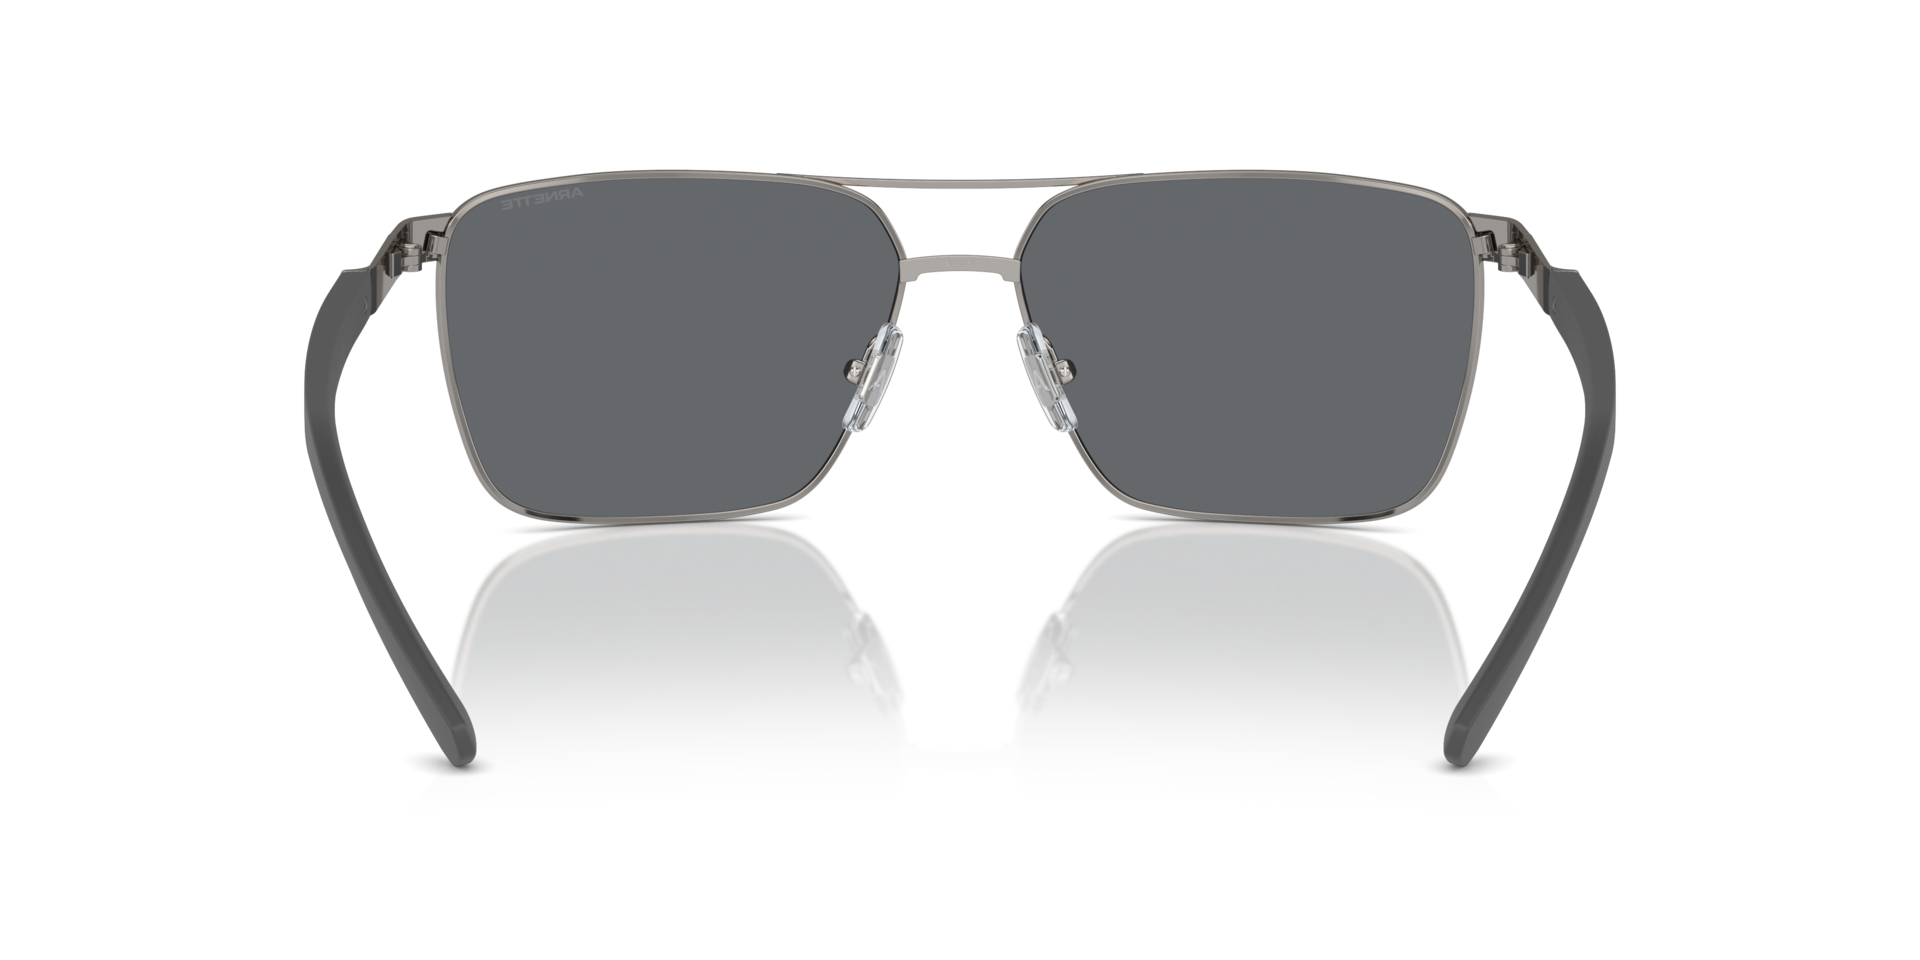 Das Bild zeigt die Sonnenbrille AN3091 741/6G von der Marke Arnette in gunmetal.